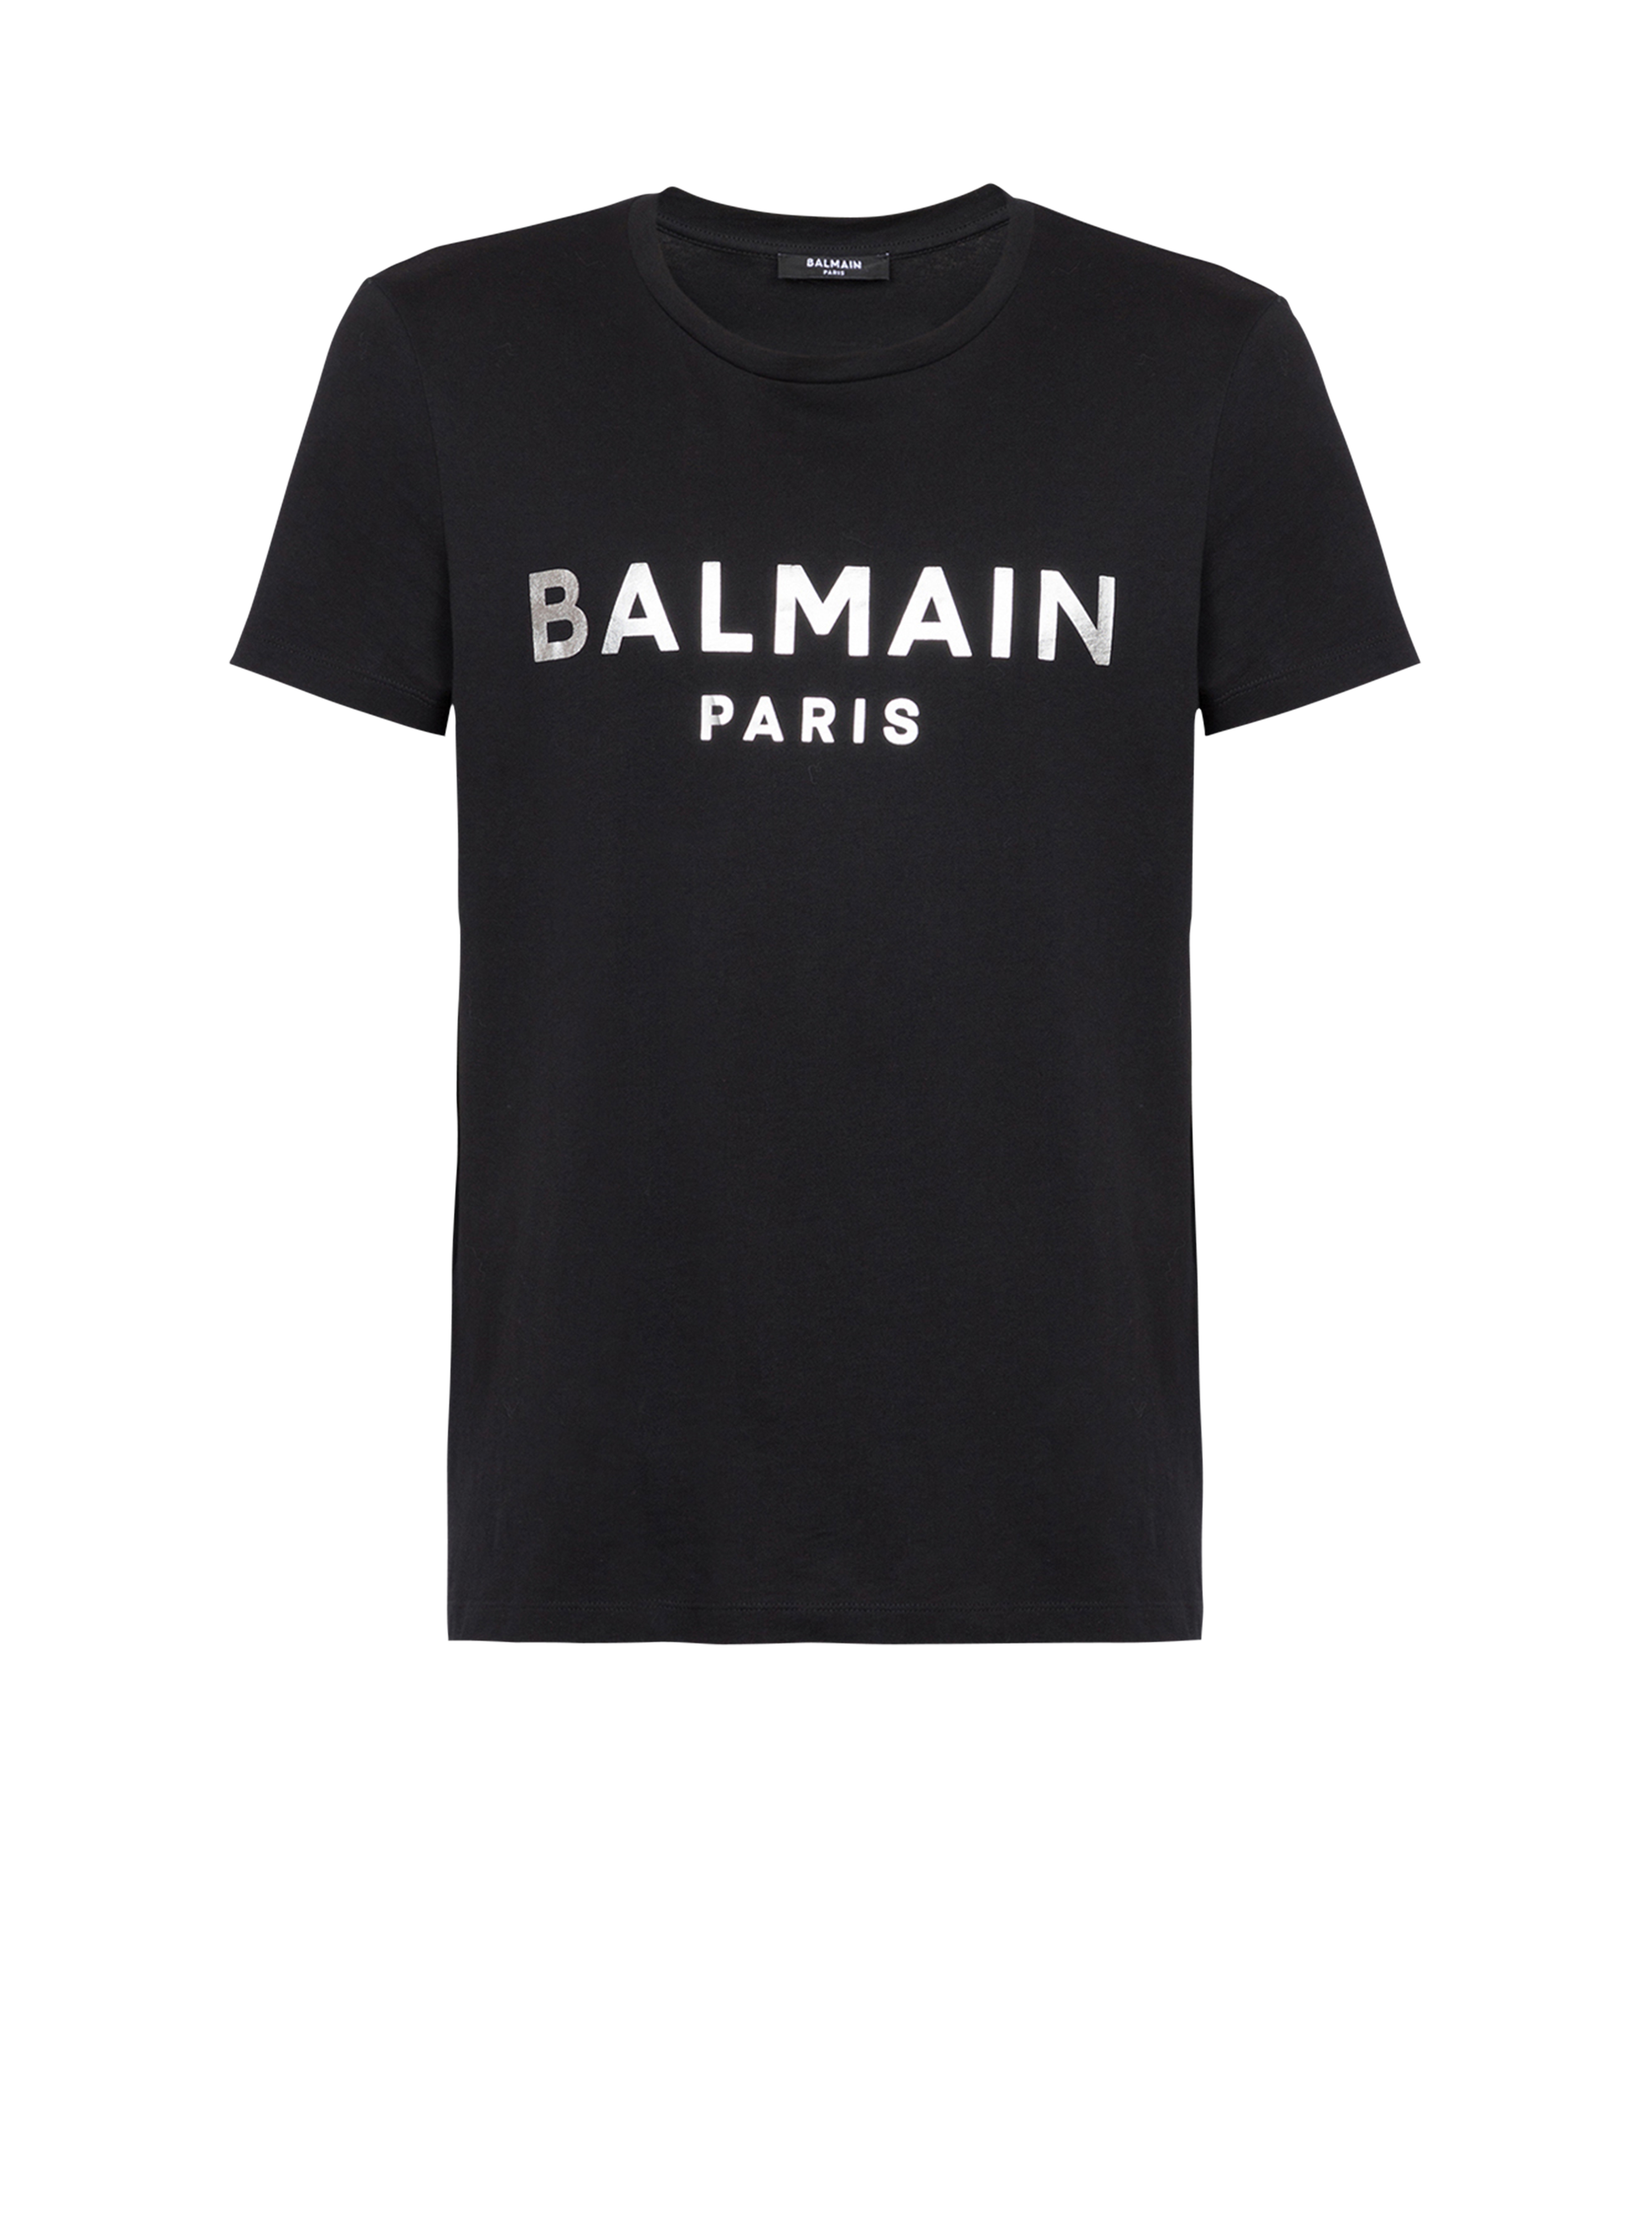 T-shirt in cotone con logo Balmain Paris, argento